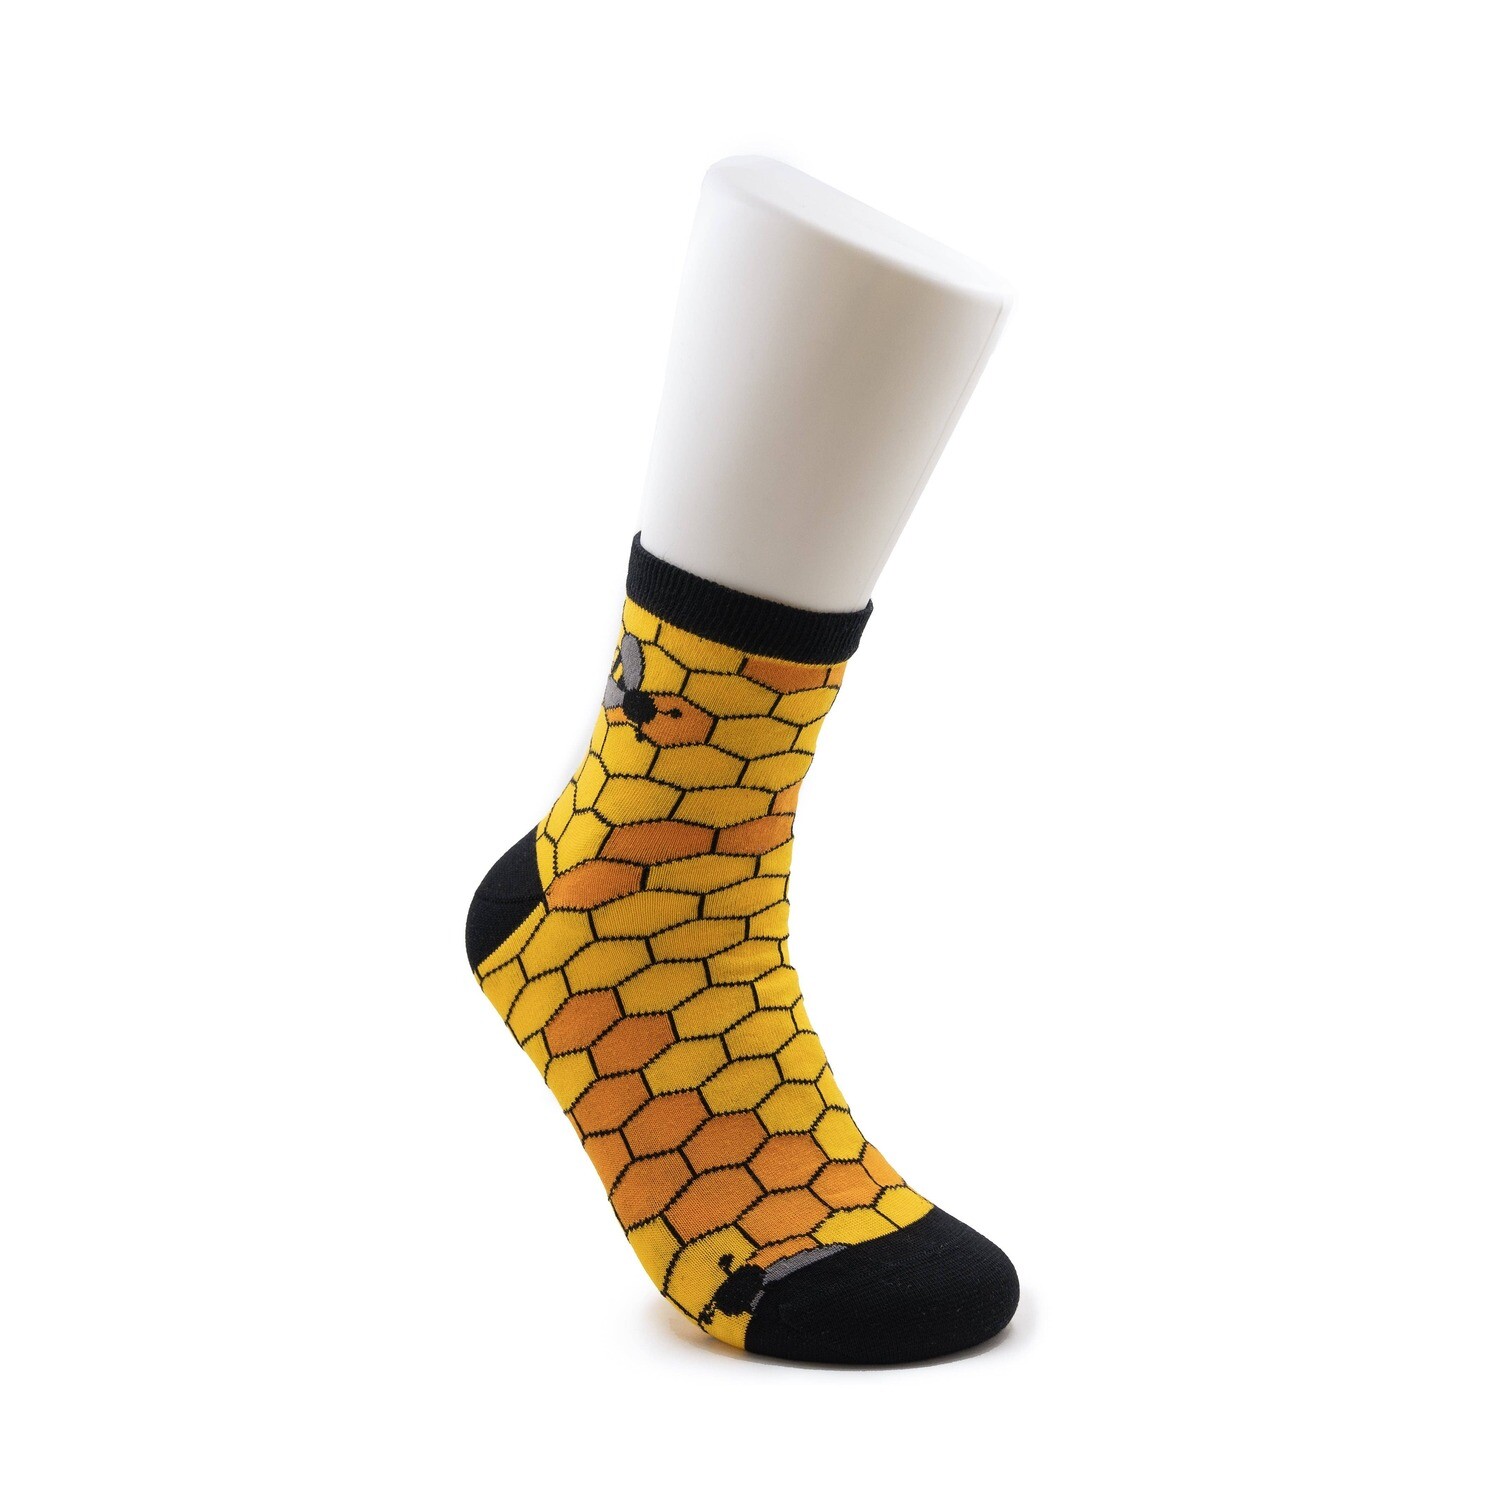 Beehive Half Crew Socks - Men's 5-9 or Women's 6-10